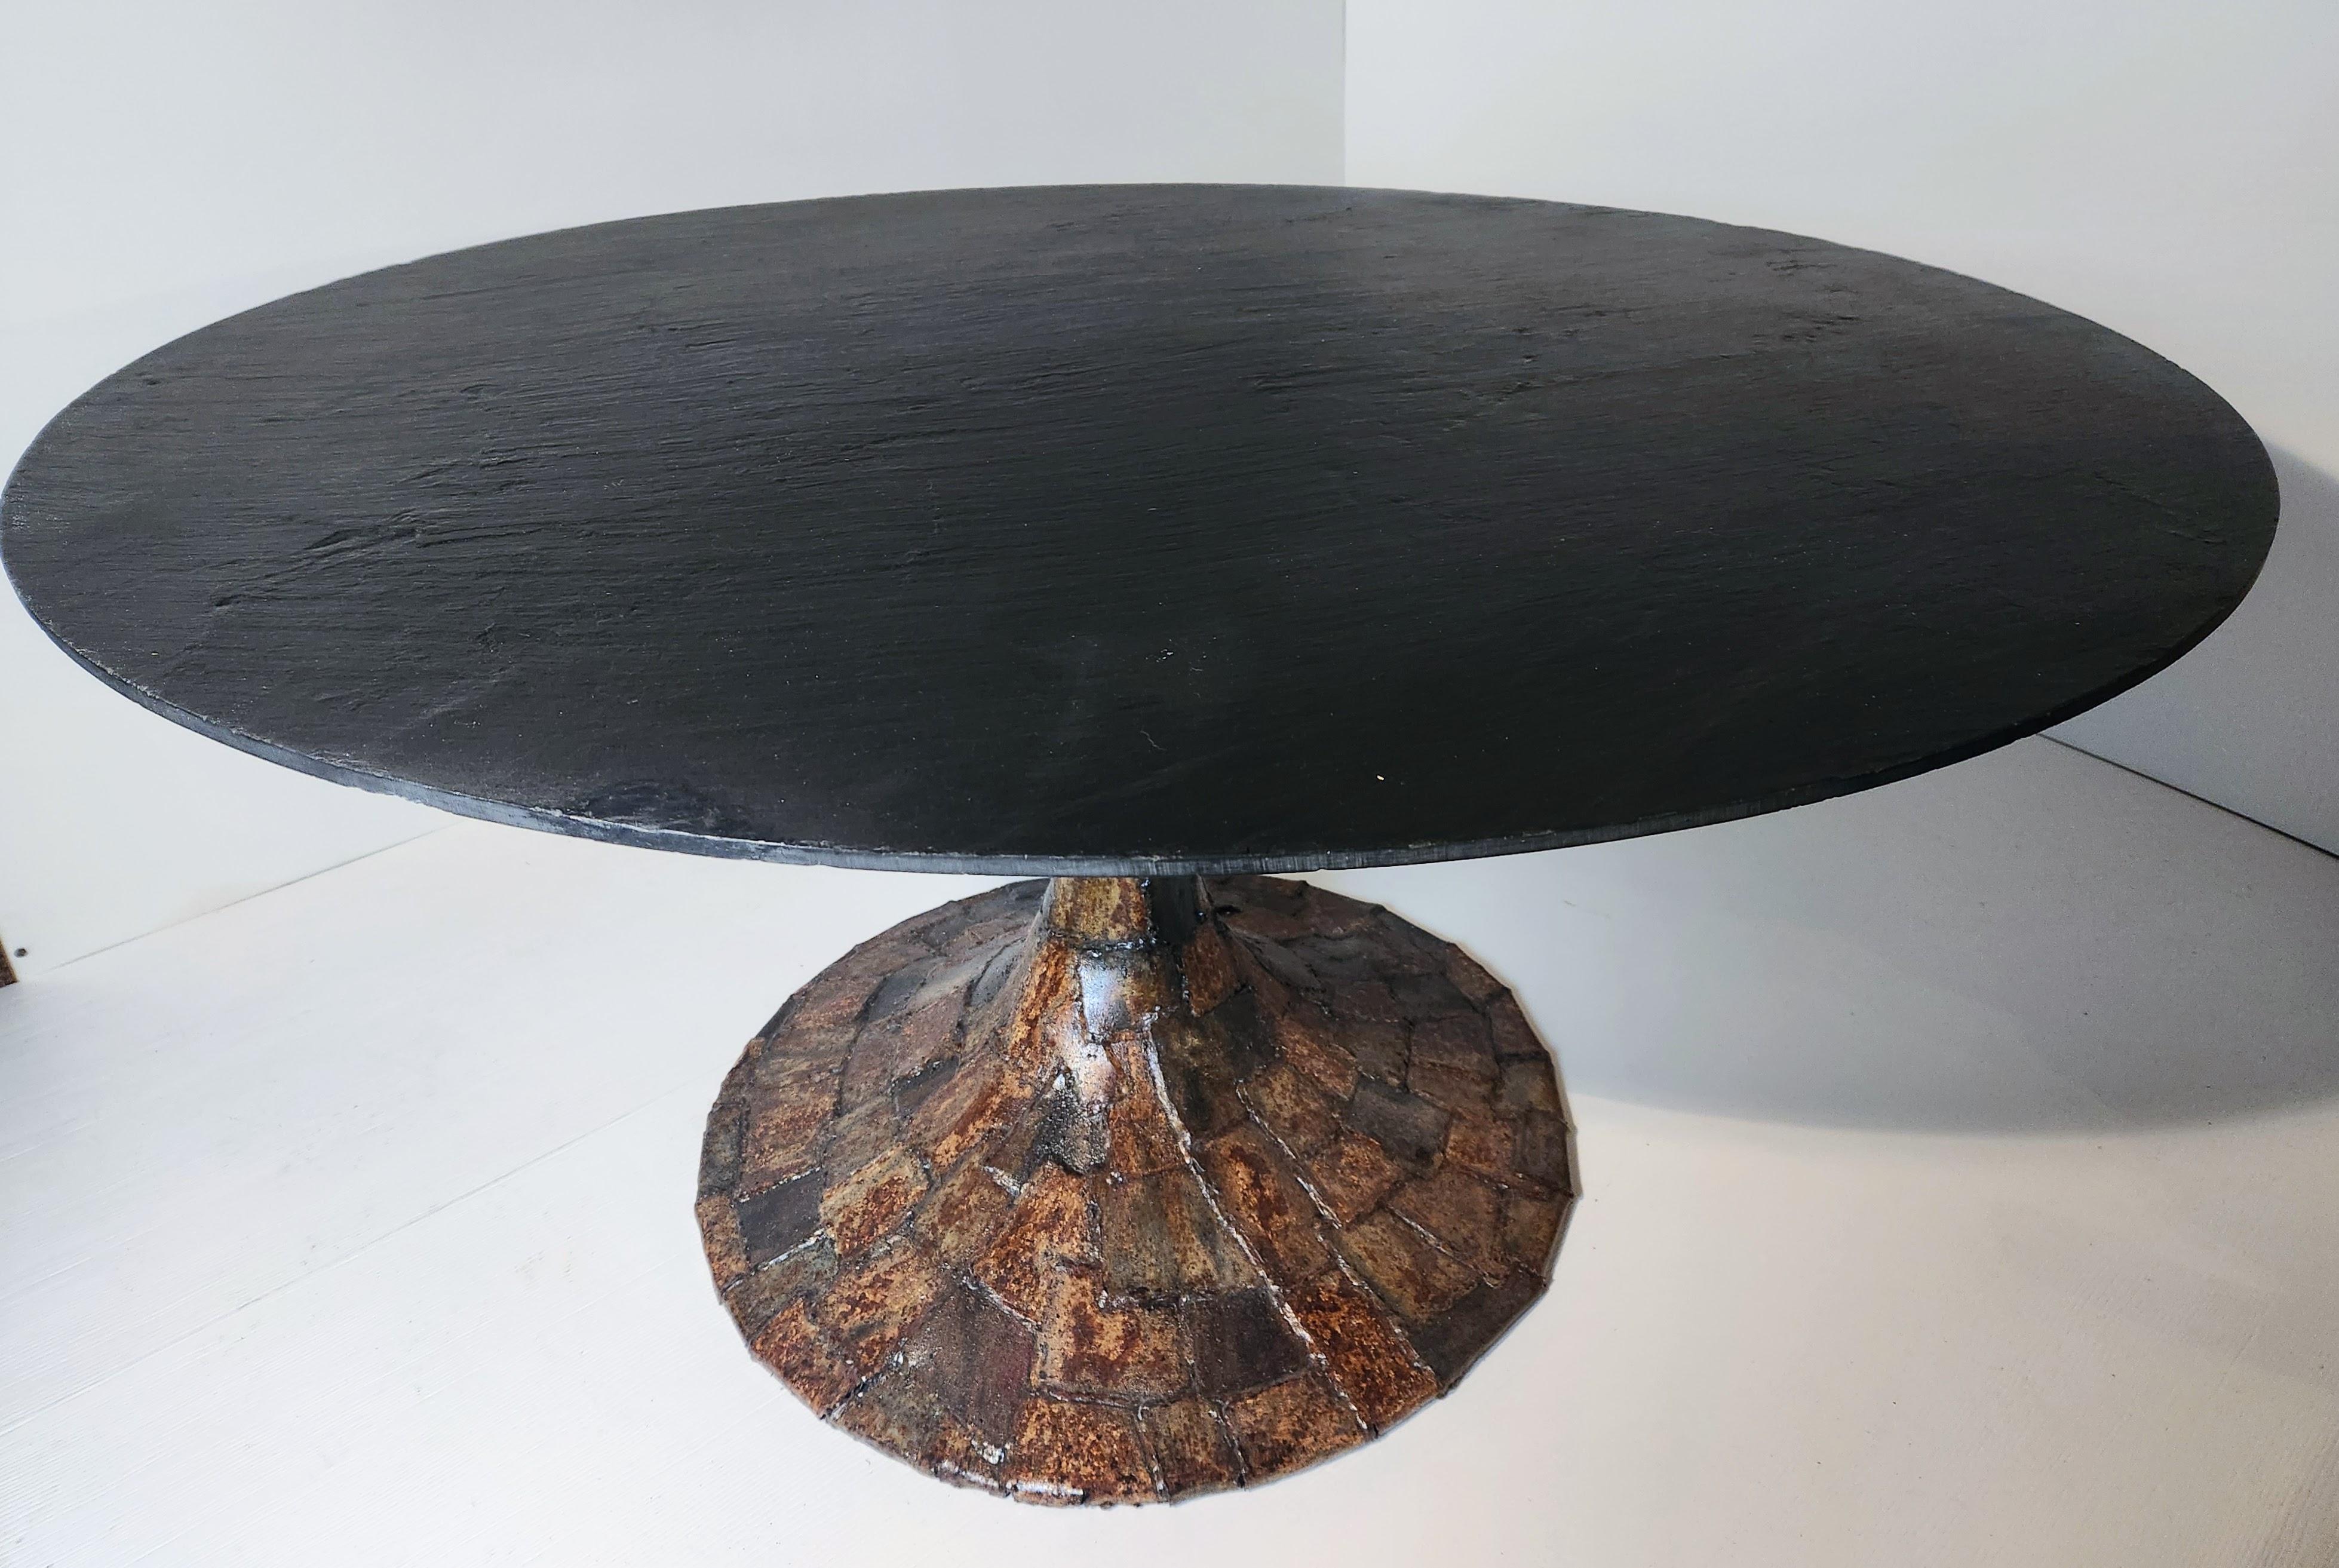 Frühe Paul Evans seltene und wunderbare Esstisch mit drei Zinken Unterstützung auf einem geschweißten emailliertem Stahl Basis aus einem überlagerten geschweißten Stahl Patchwork von Platten mit einer faszinierenden Oberfläche Zusammensetzung, die